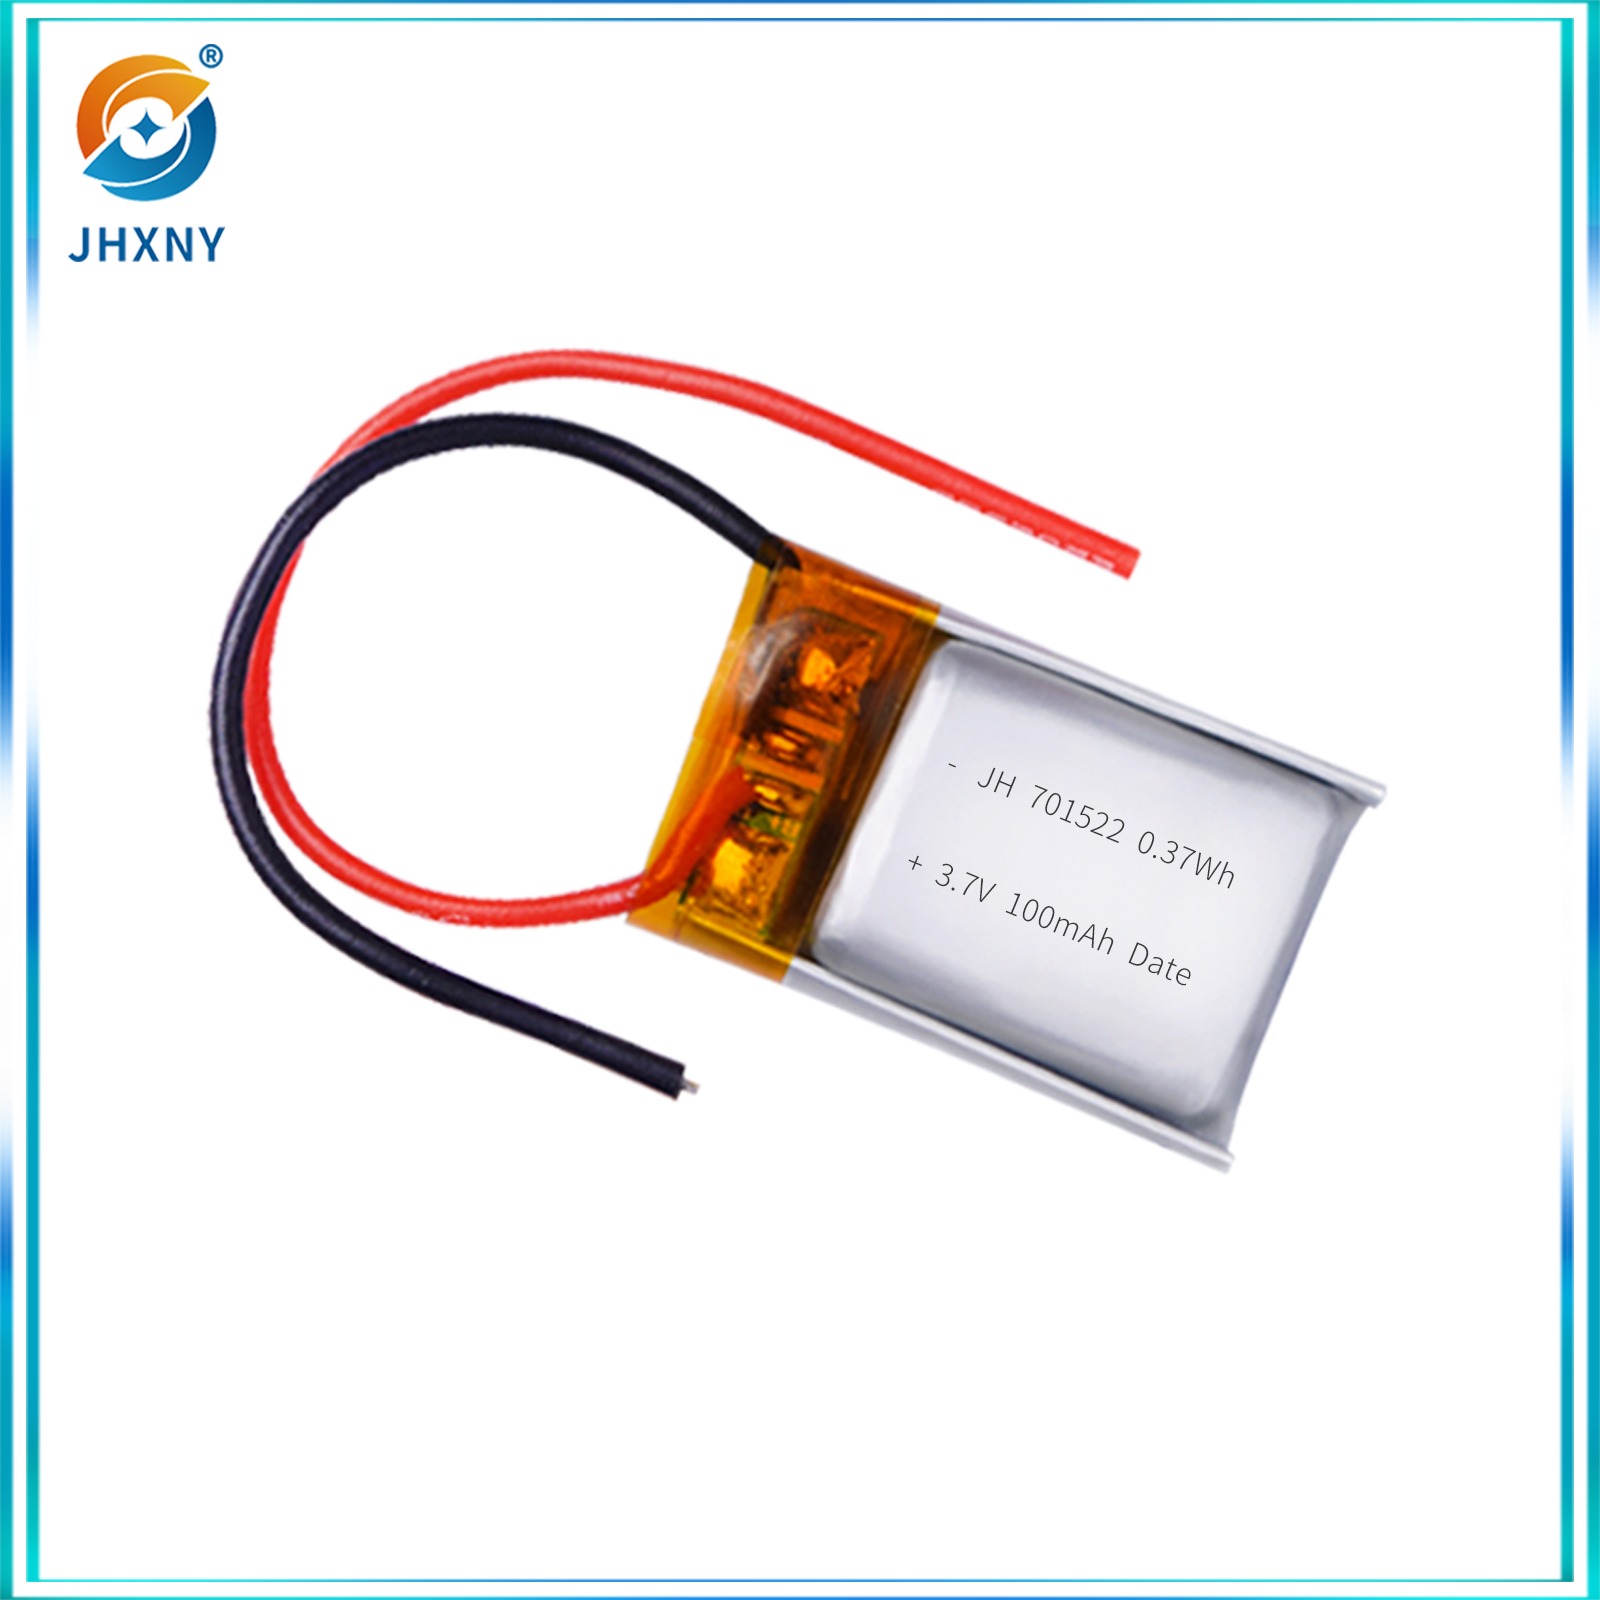 جهاز تصفية الفم ببطاريات الليثيوم من طراز JH701522 3.7 V100MH.